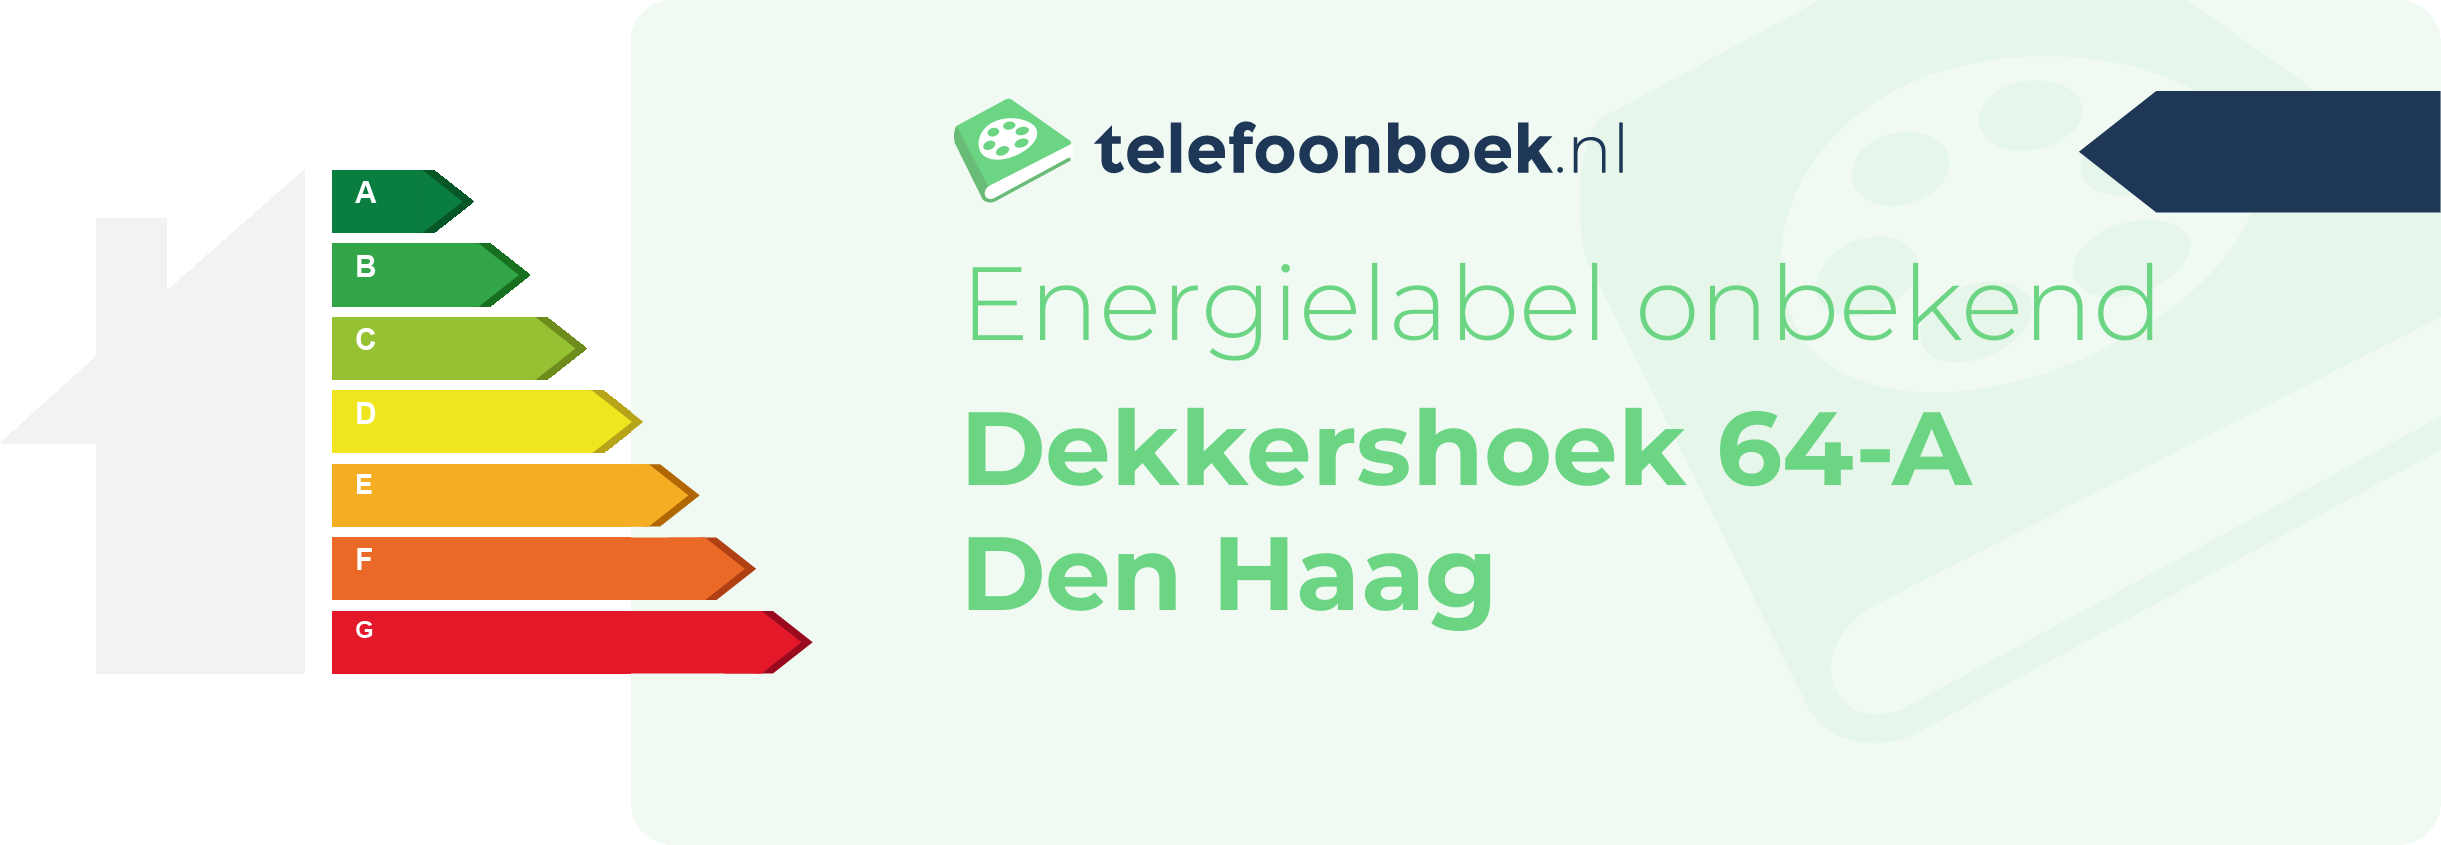 Energielabel Dekkershoek 64-A Den Haag